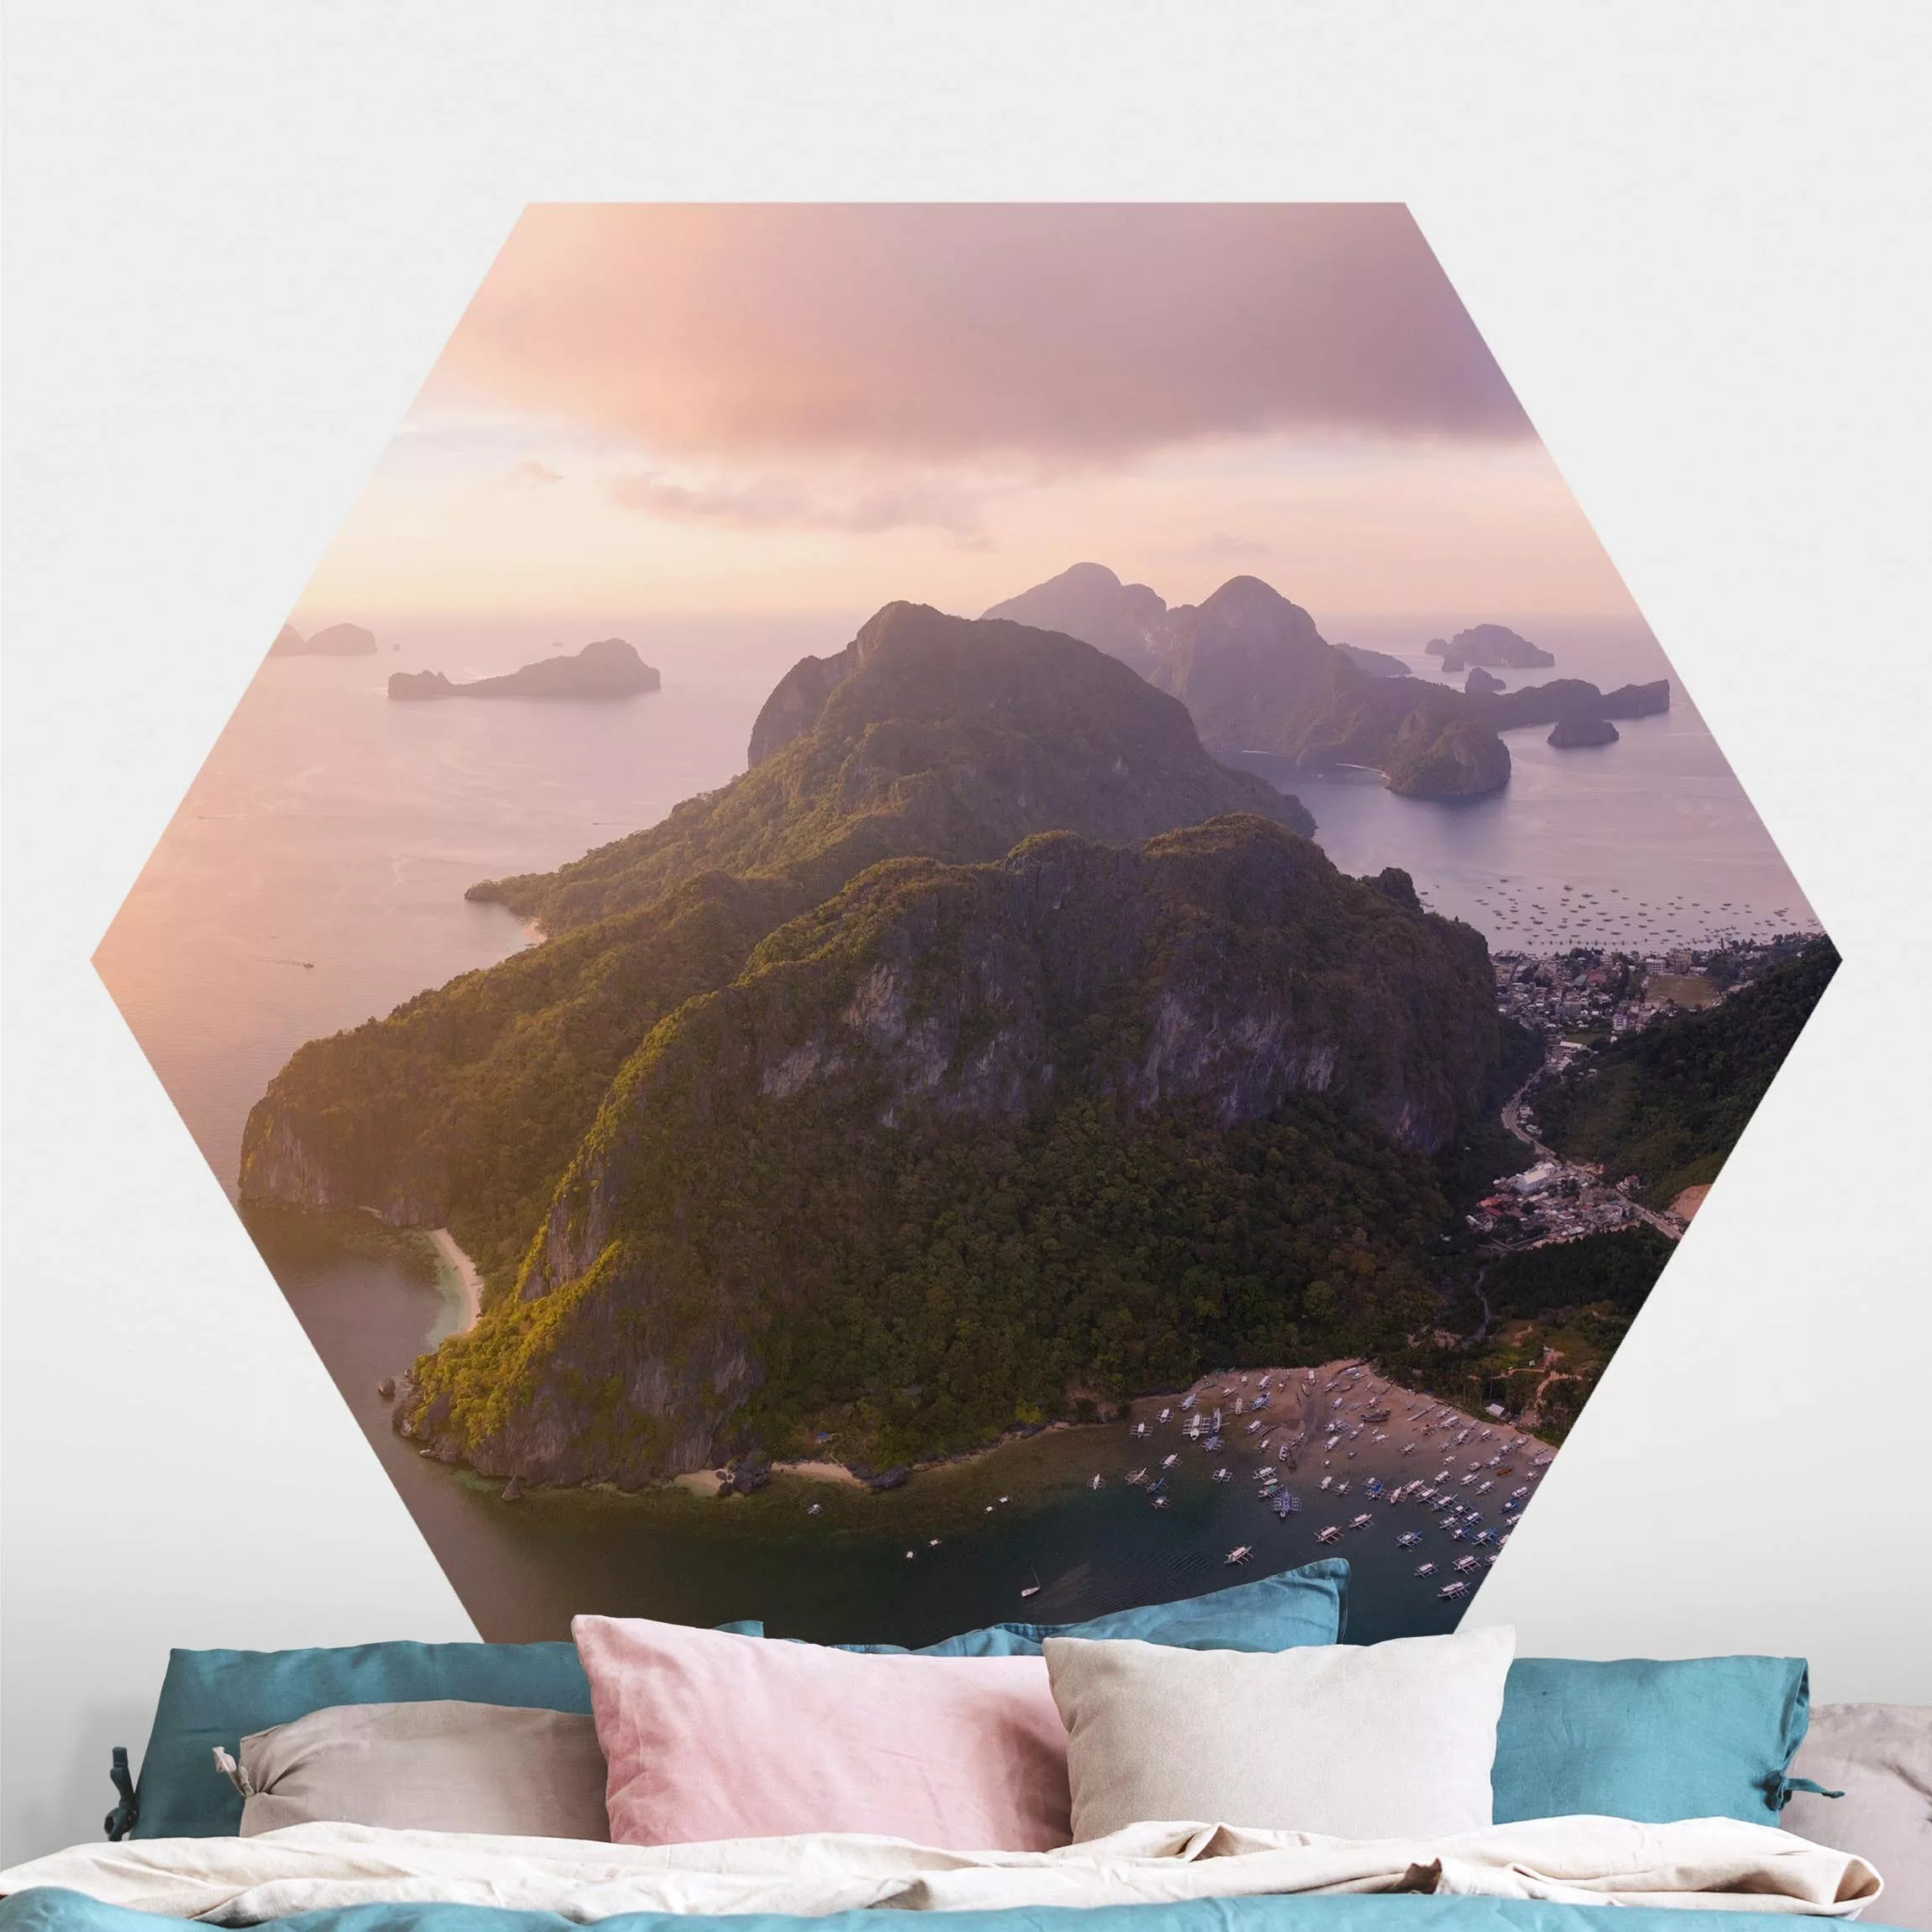 Hexagon Fototapete selbstklebend Atmosphärische Küstenlandschaft günstig online kaufen